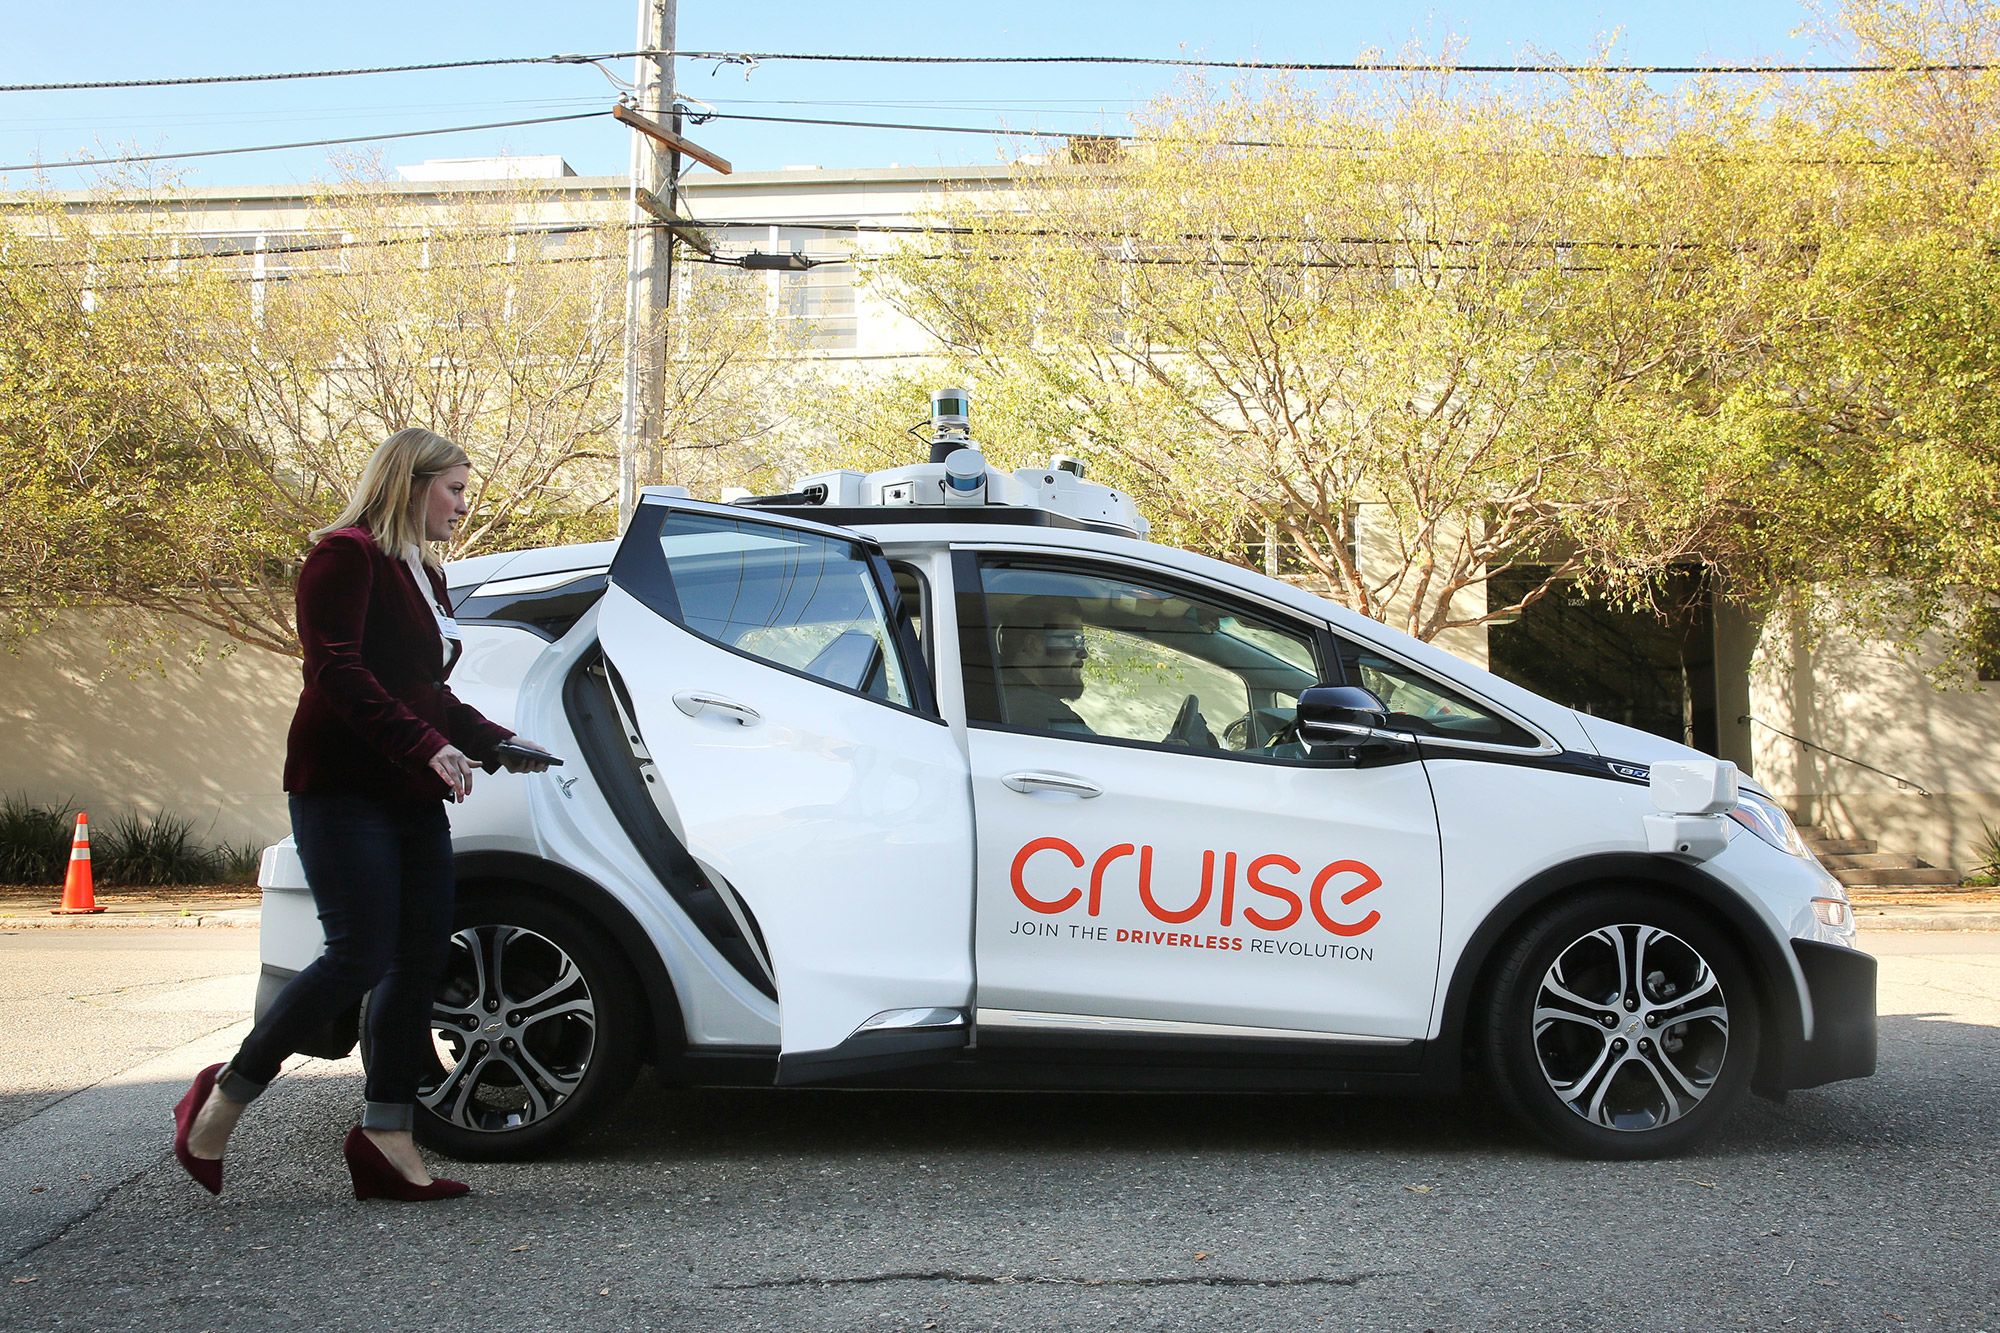 GM Cruise autonomous vehicle unit raises $1.15 billion